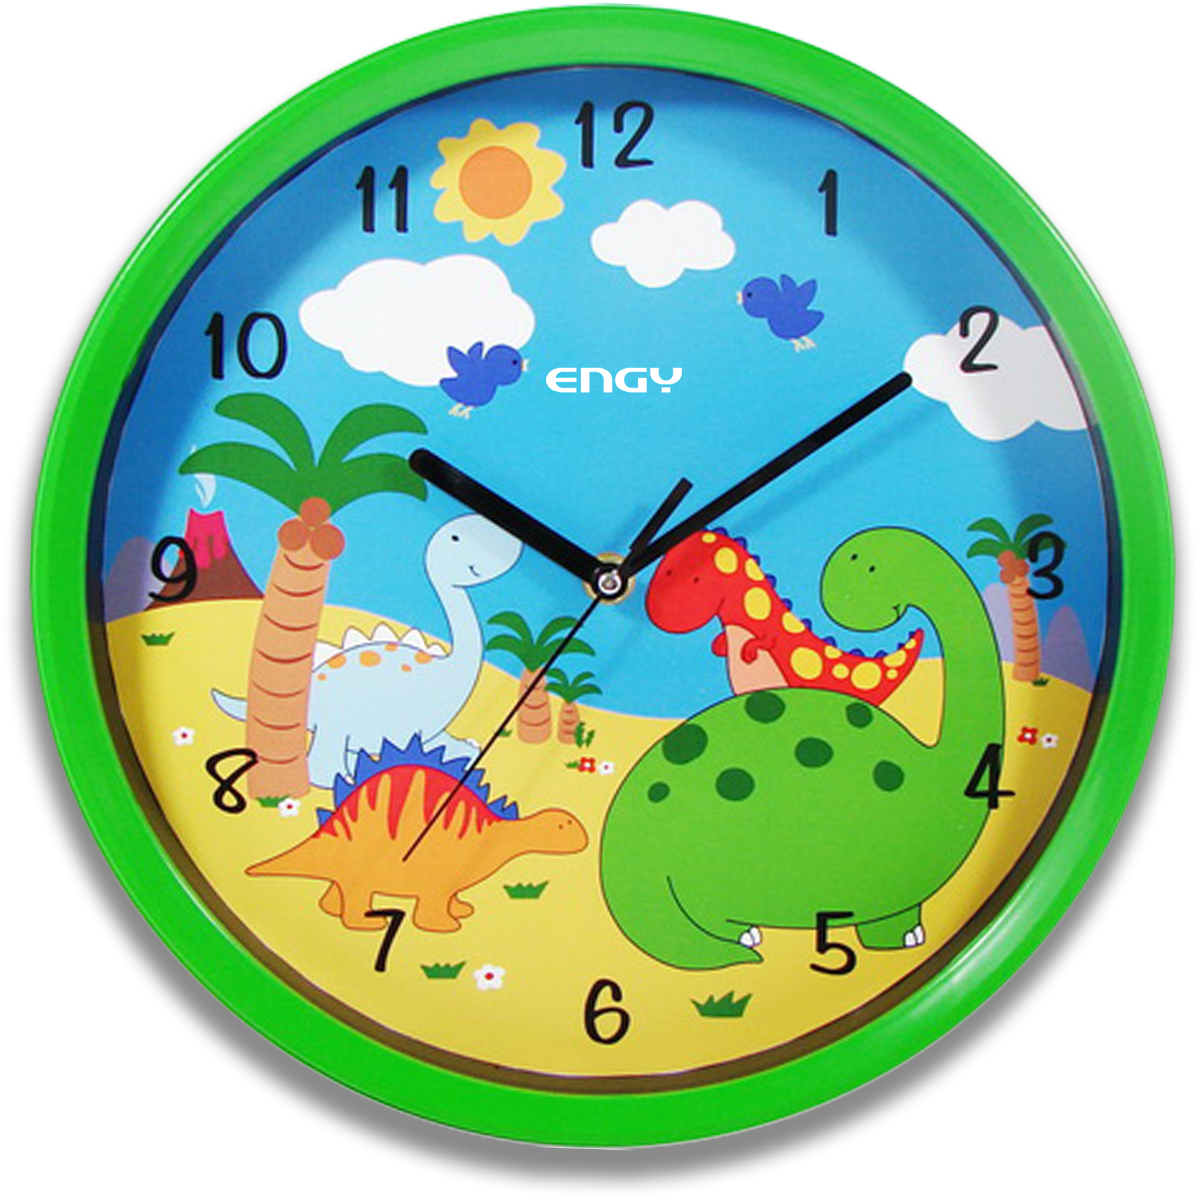 Часы для ребенка в детский сад. Часы настенные кварцевые Engy. Часы настенные кварцевые Engy модель ЕС-17 круглые. Круглые часы для детей. Часы настенные для детей.